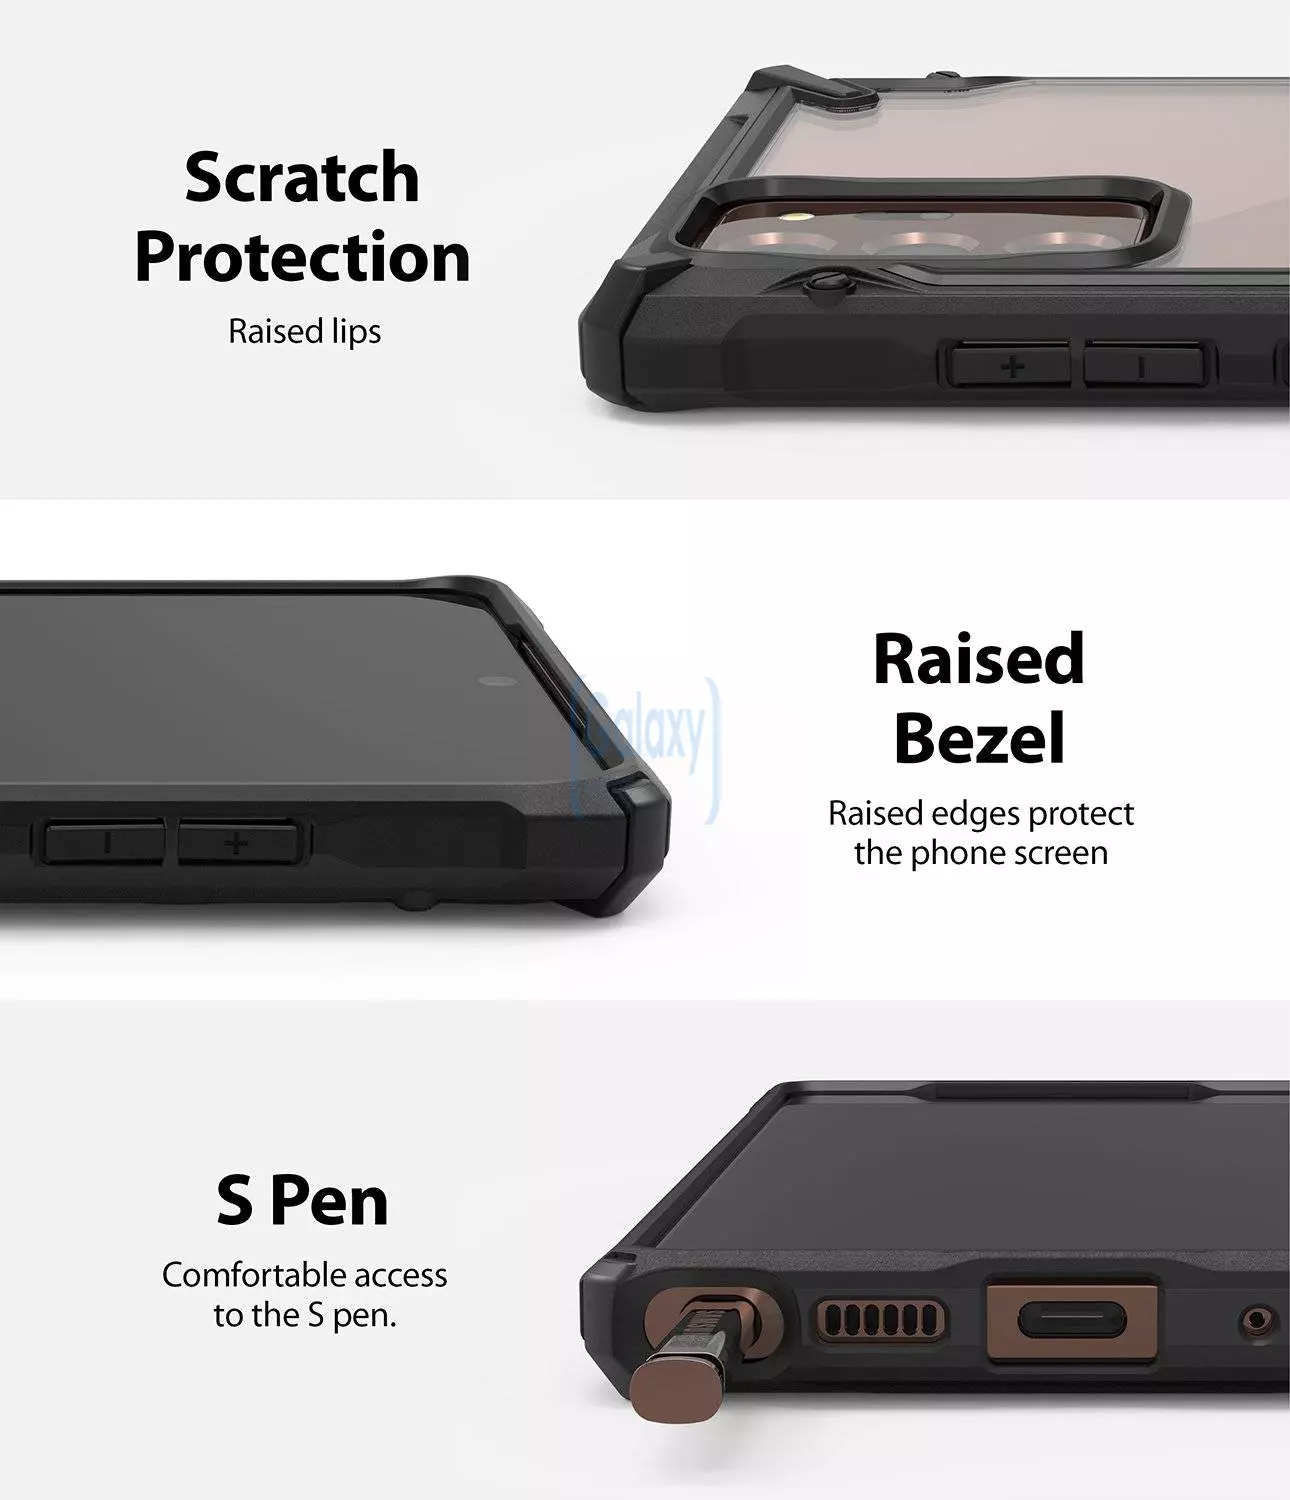 Чехол бампер Ringke Fusion-X для Samsung Galaxy Note 20 Black (Черный)